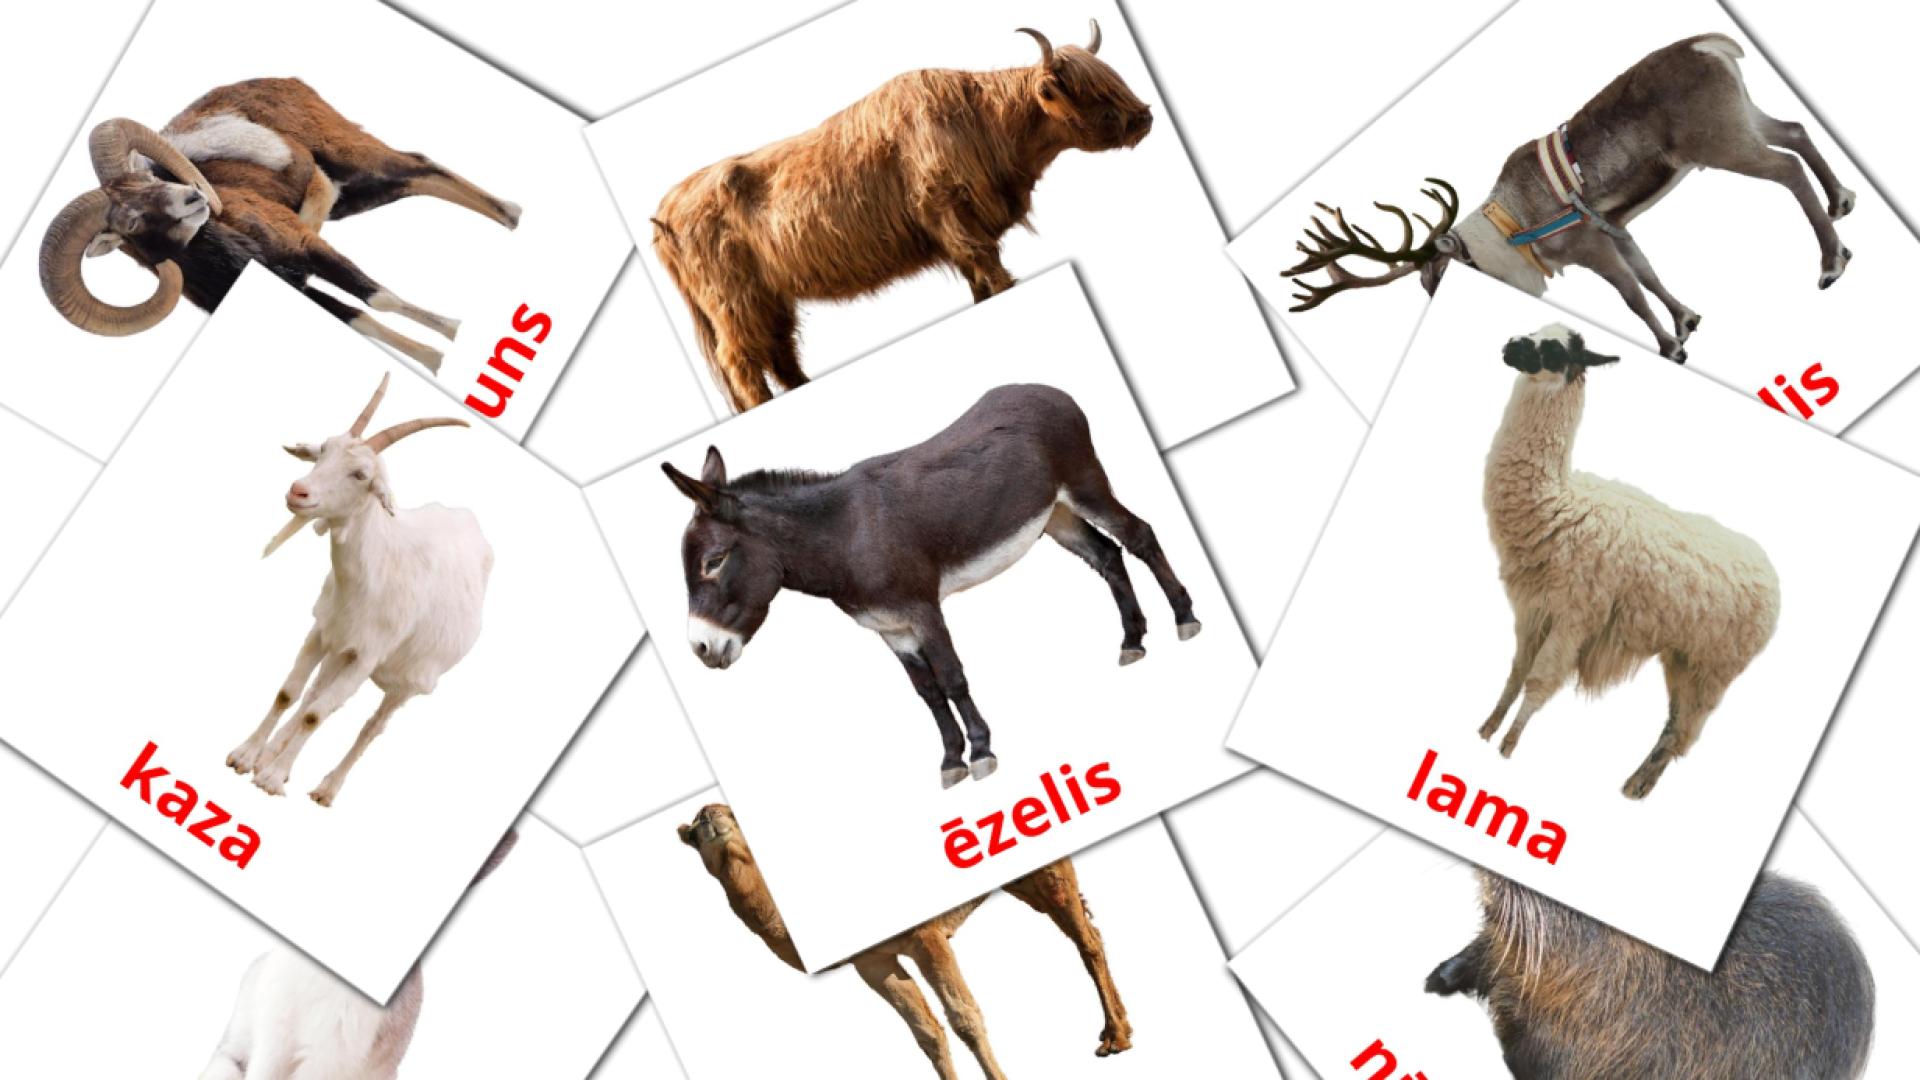 Lauksaimniecības dzīvnieki  flashcards